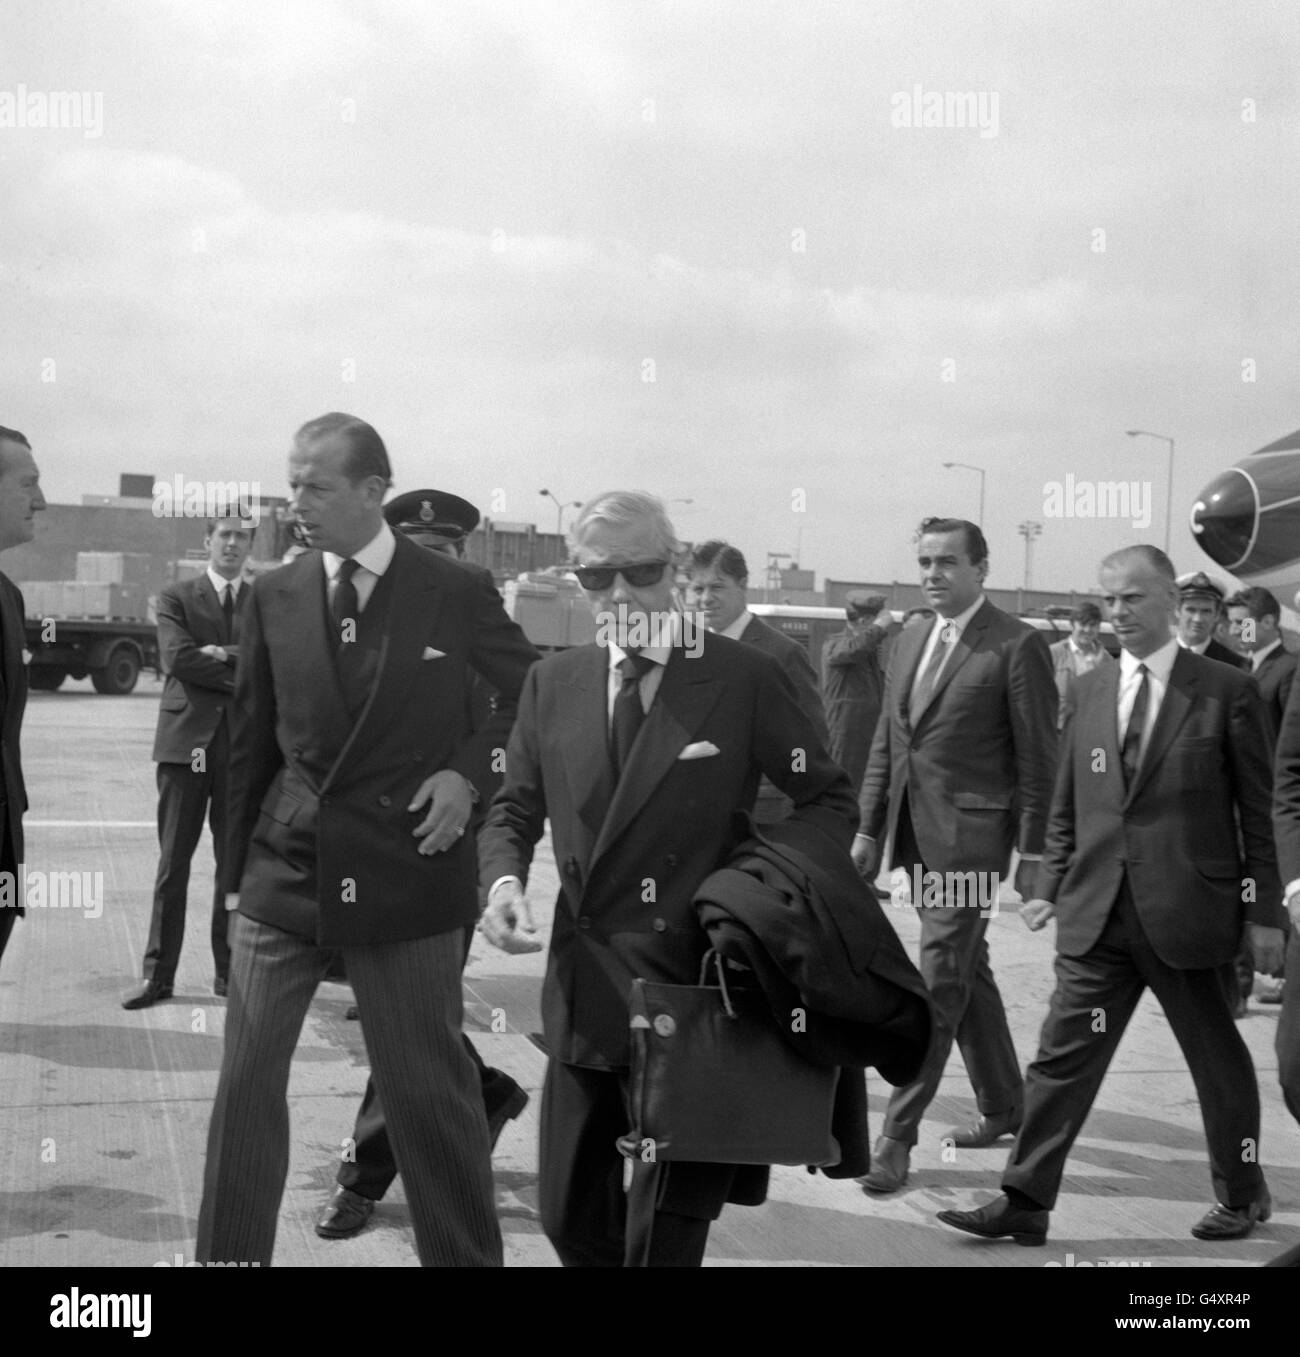 Il Duca di Windsor, a destra, e suo nipote, il Duca di Kent, all'Aeroporto di Heathrow all'arrivo del Duca di Windsor da Parigi per assistere ai funerali della cognata, la Principessa Marina, Duchessa di Kent, alla Cappella di San Giorgio, Windsor. Foto Stock